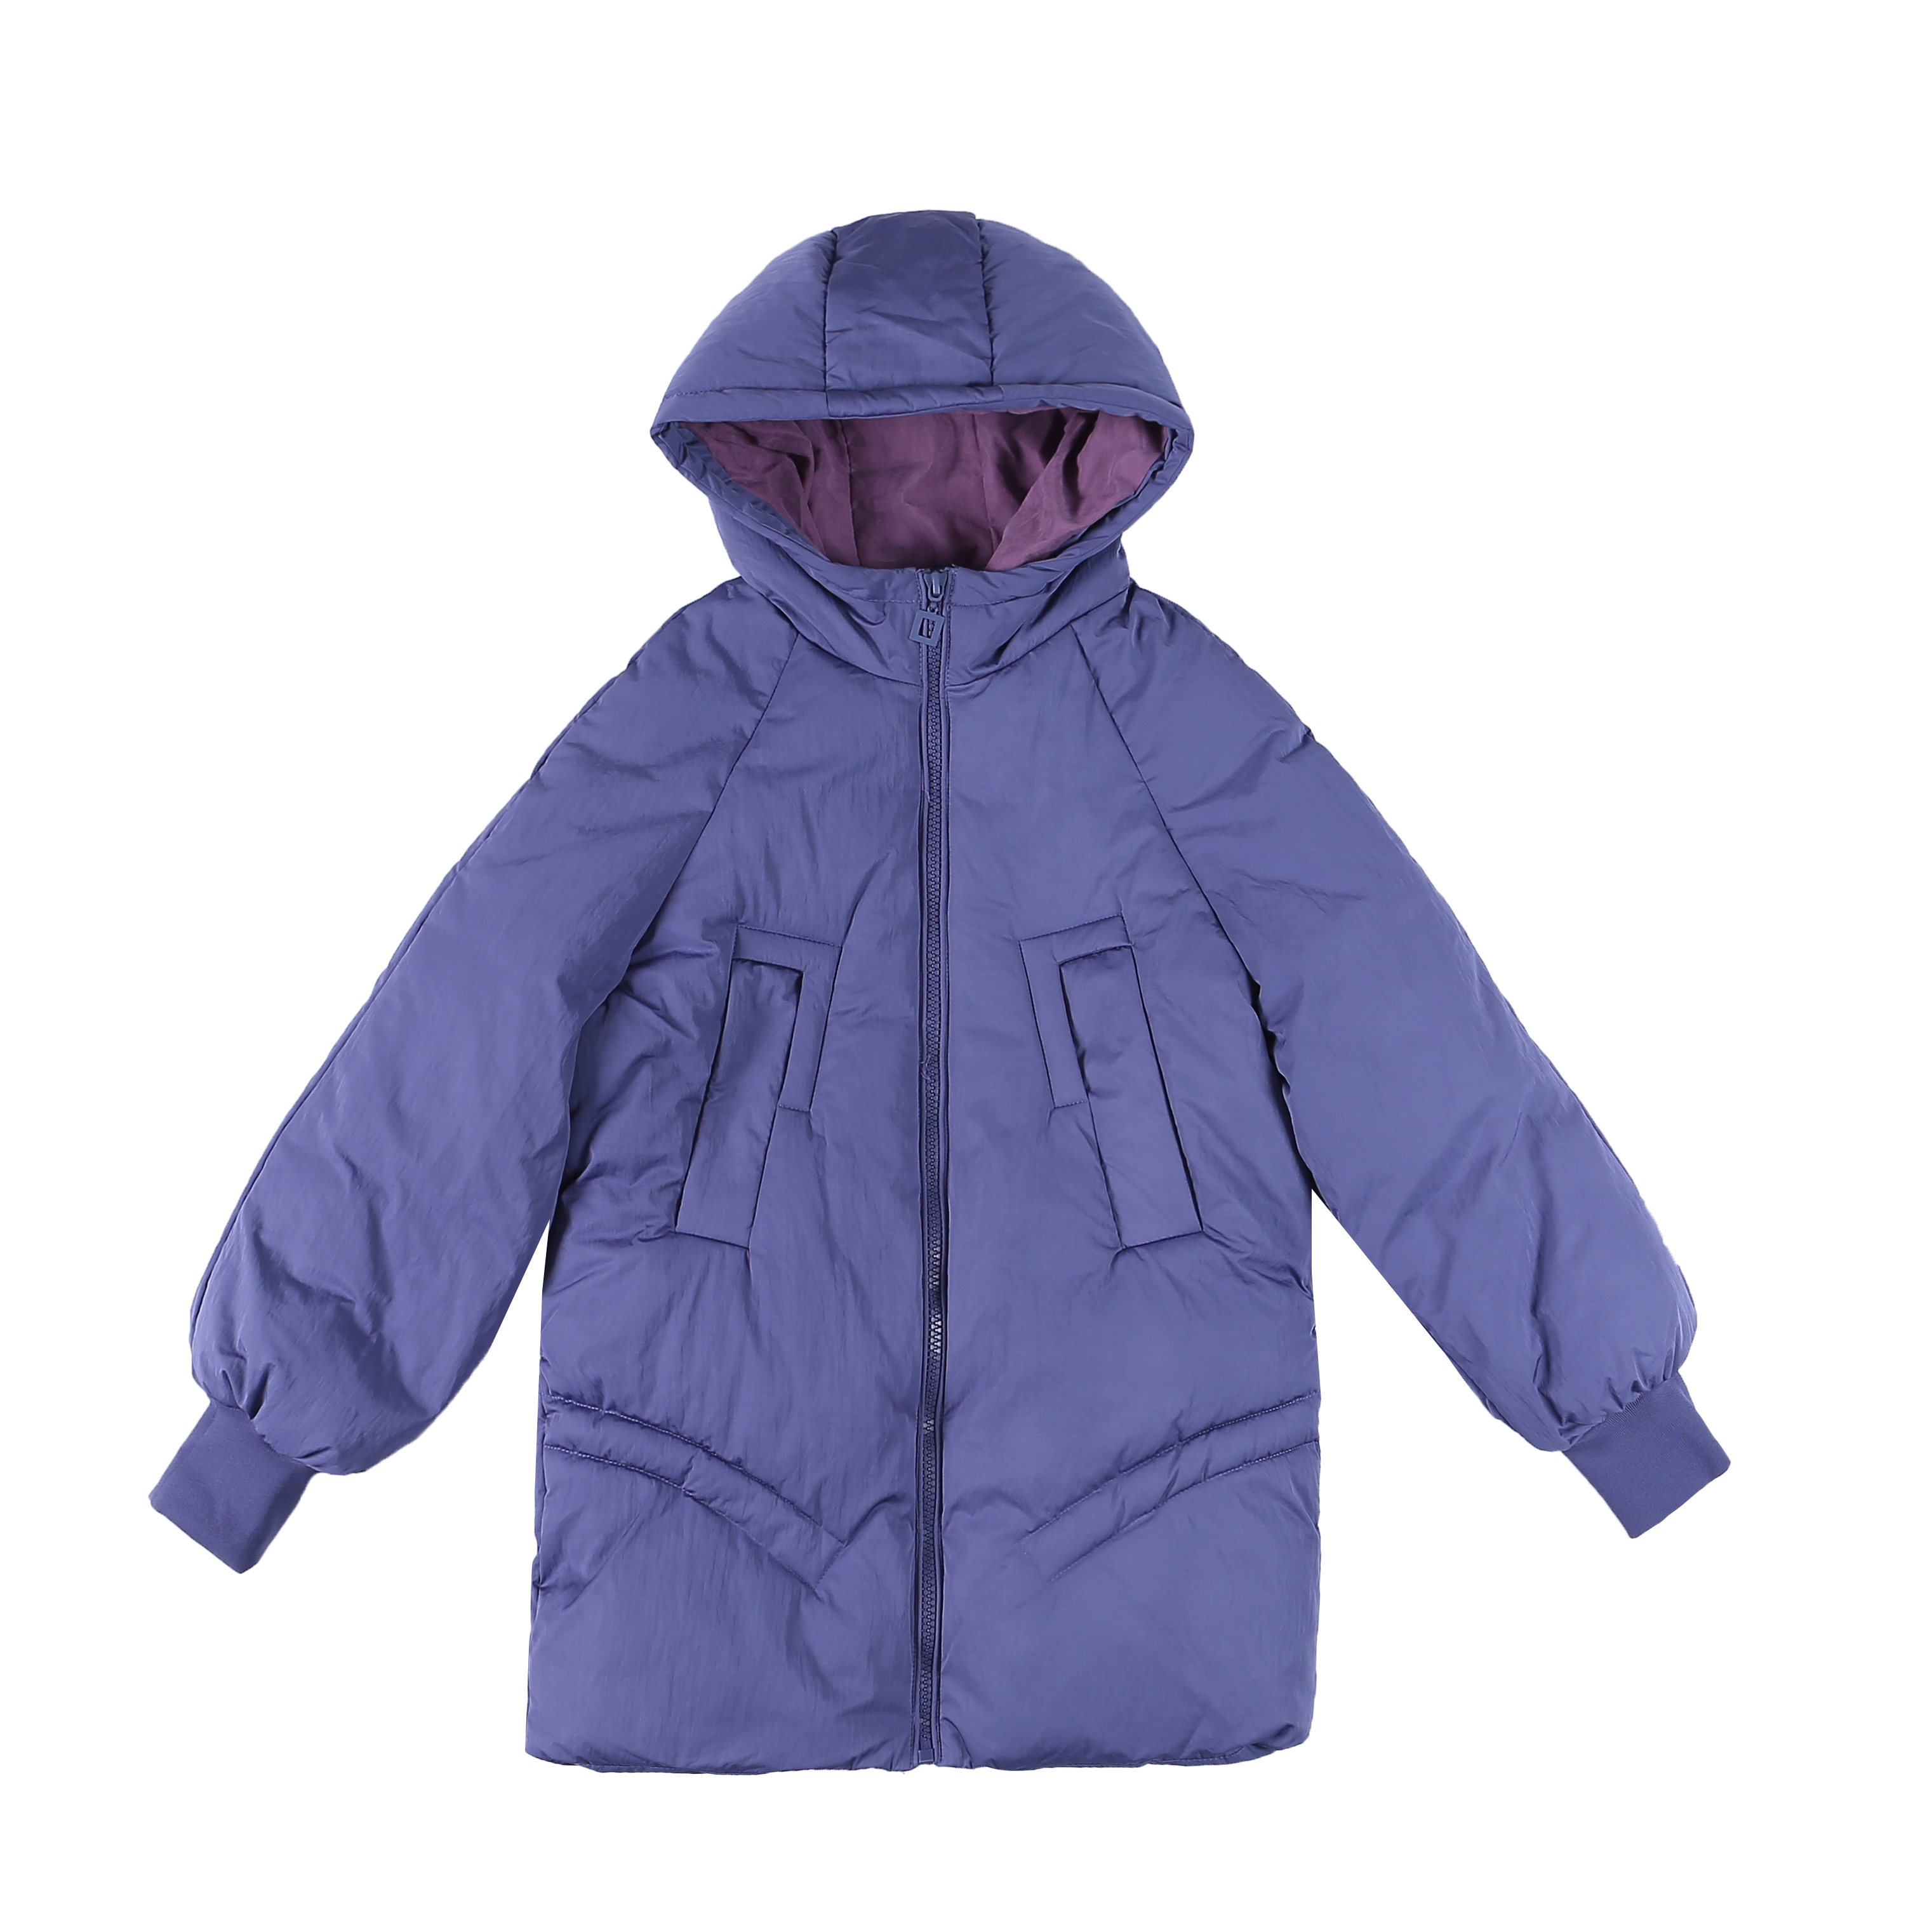 Bekleidung Baumwolle Mantel Winter Damen Neu Fett Große Größe Blau Online